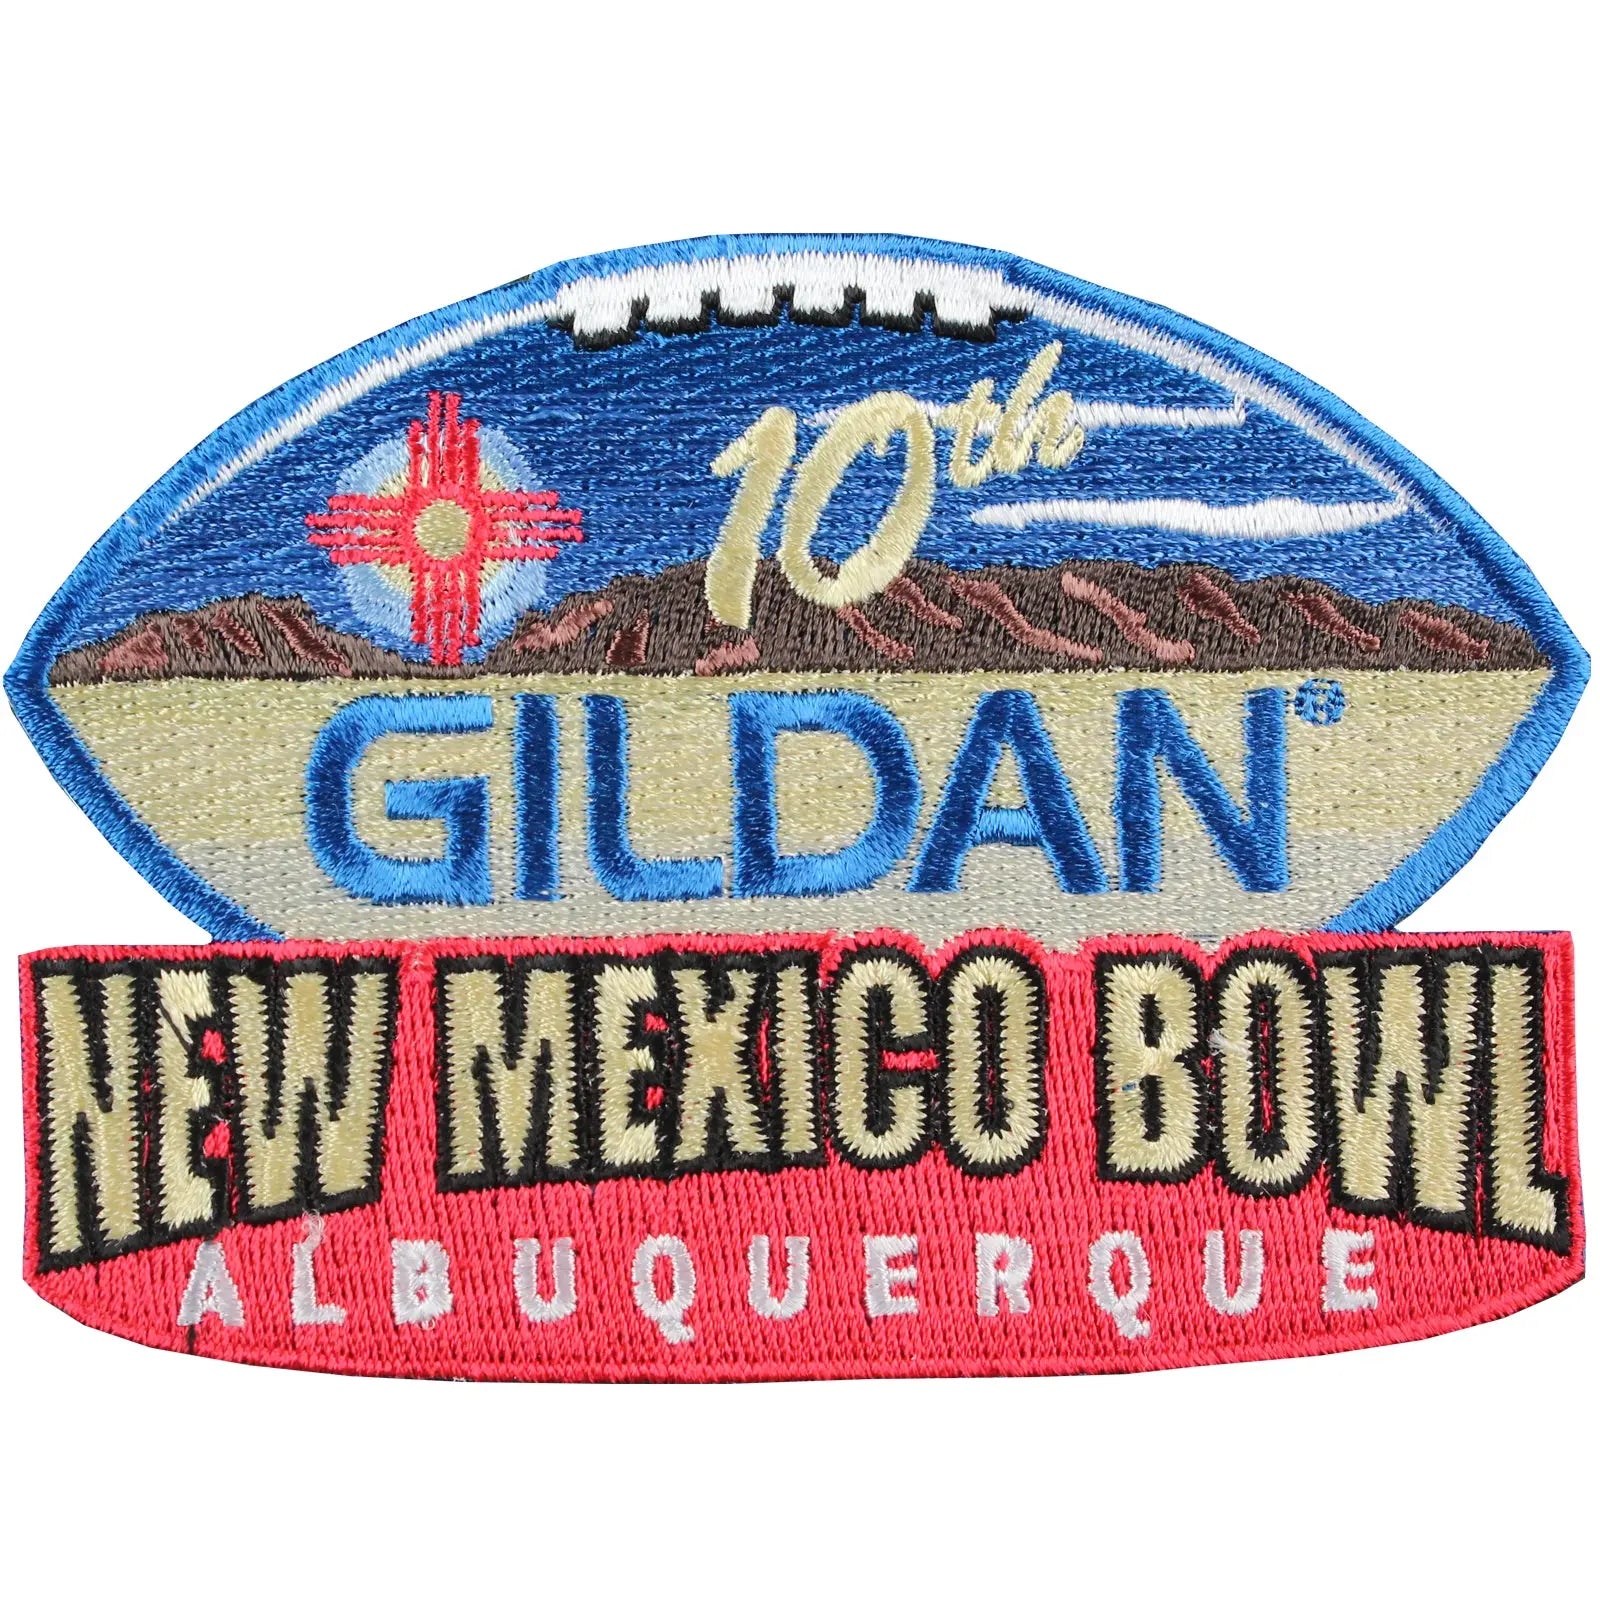 2015 Gildan New Mexico 10th Annual Bowl Game Patch in Albuquerque Arizona vs New Mexico 